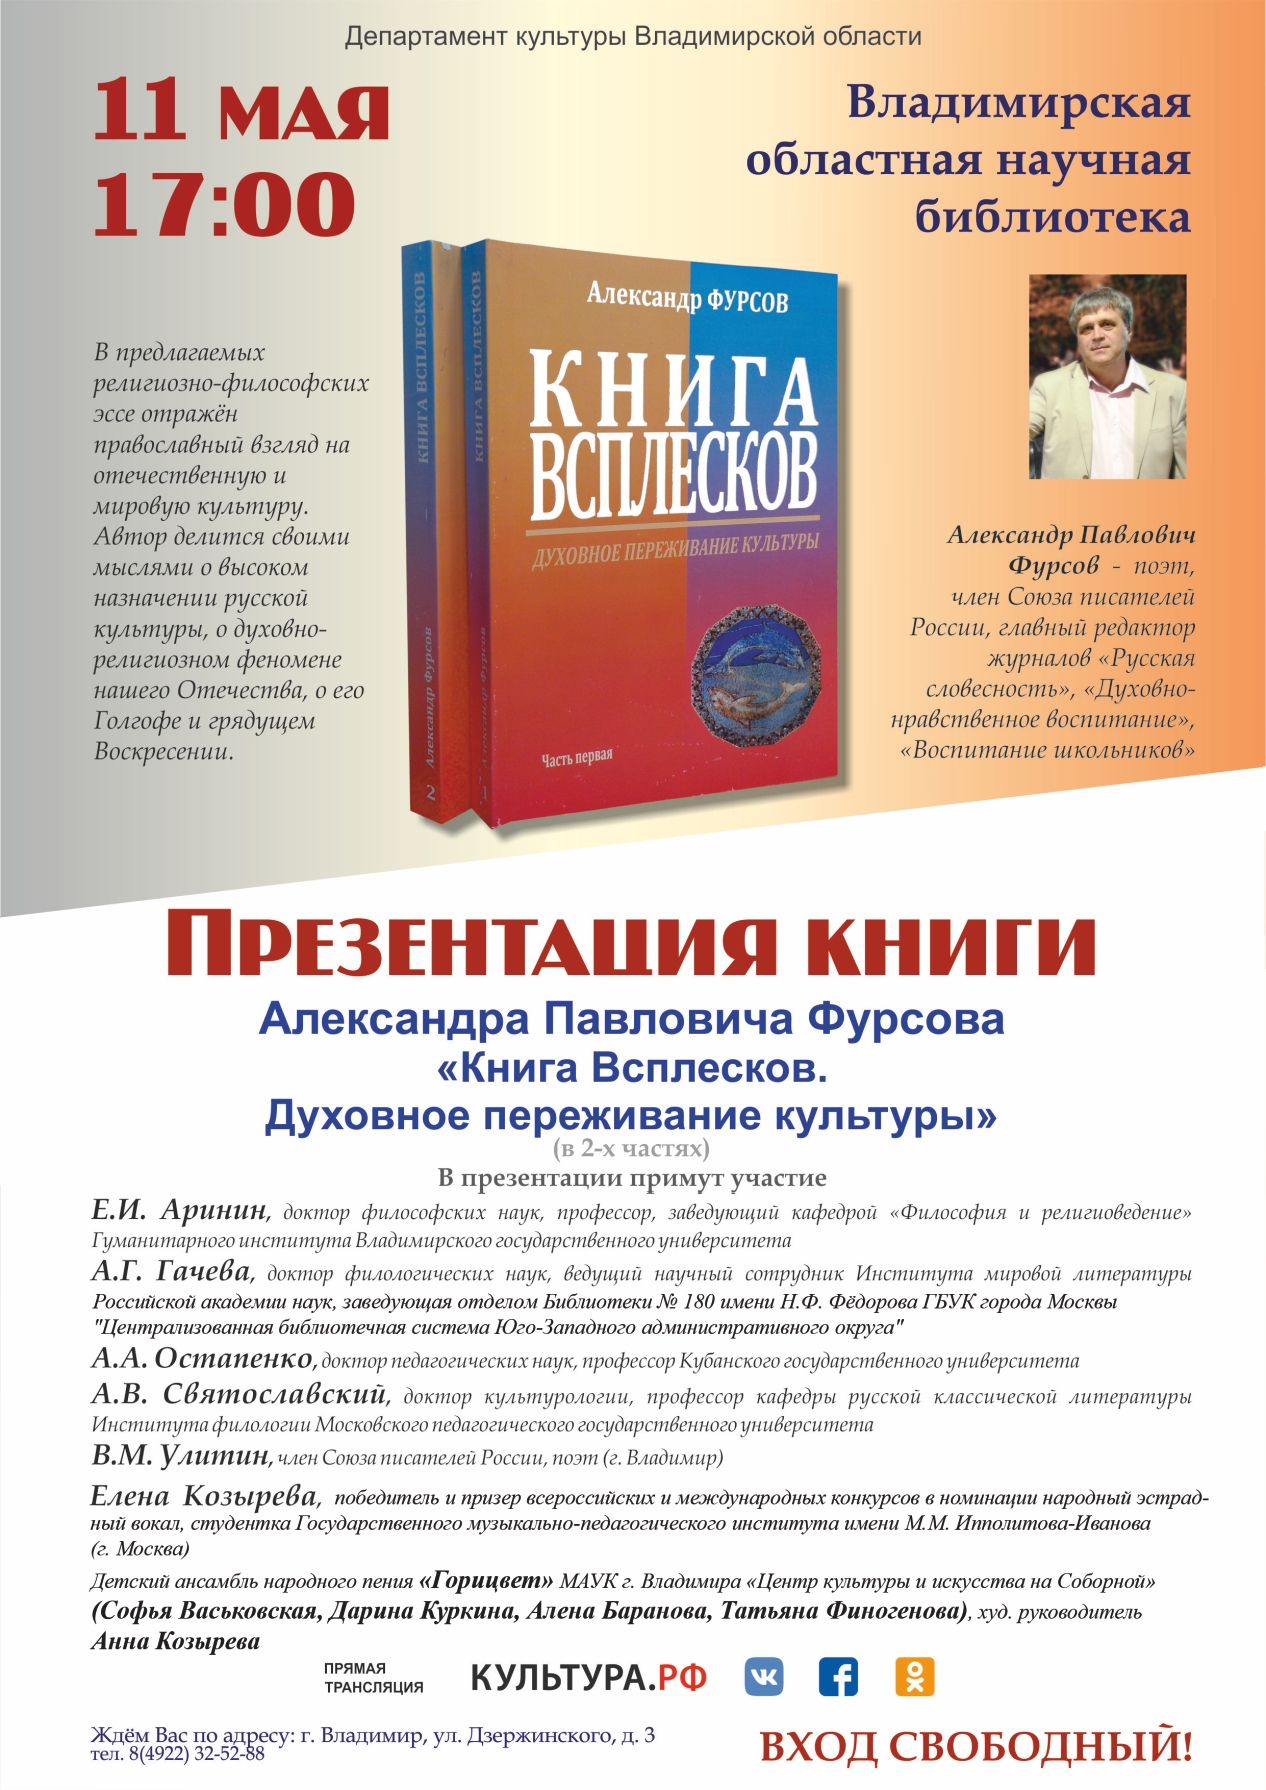 Афиша презентации книги "Книга Всплесков. Духовные переживания культуры"